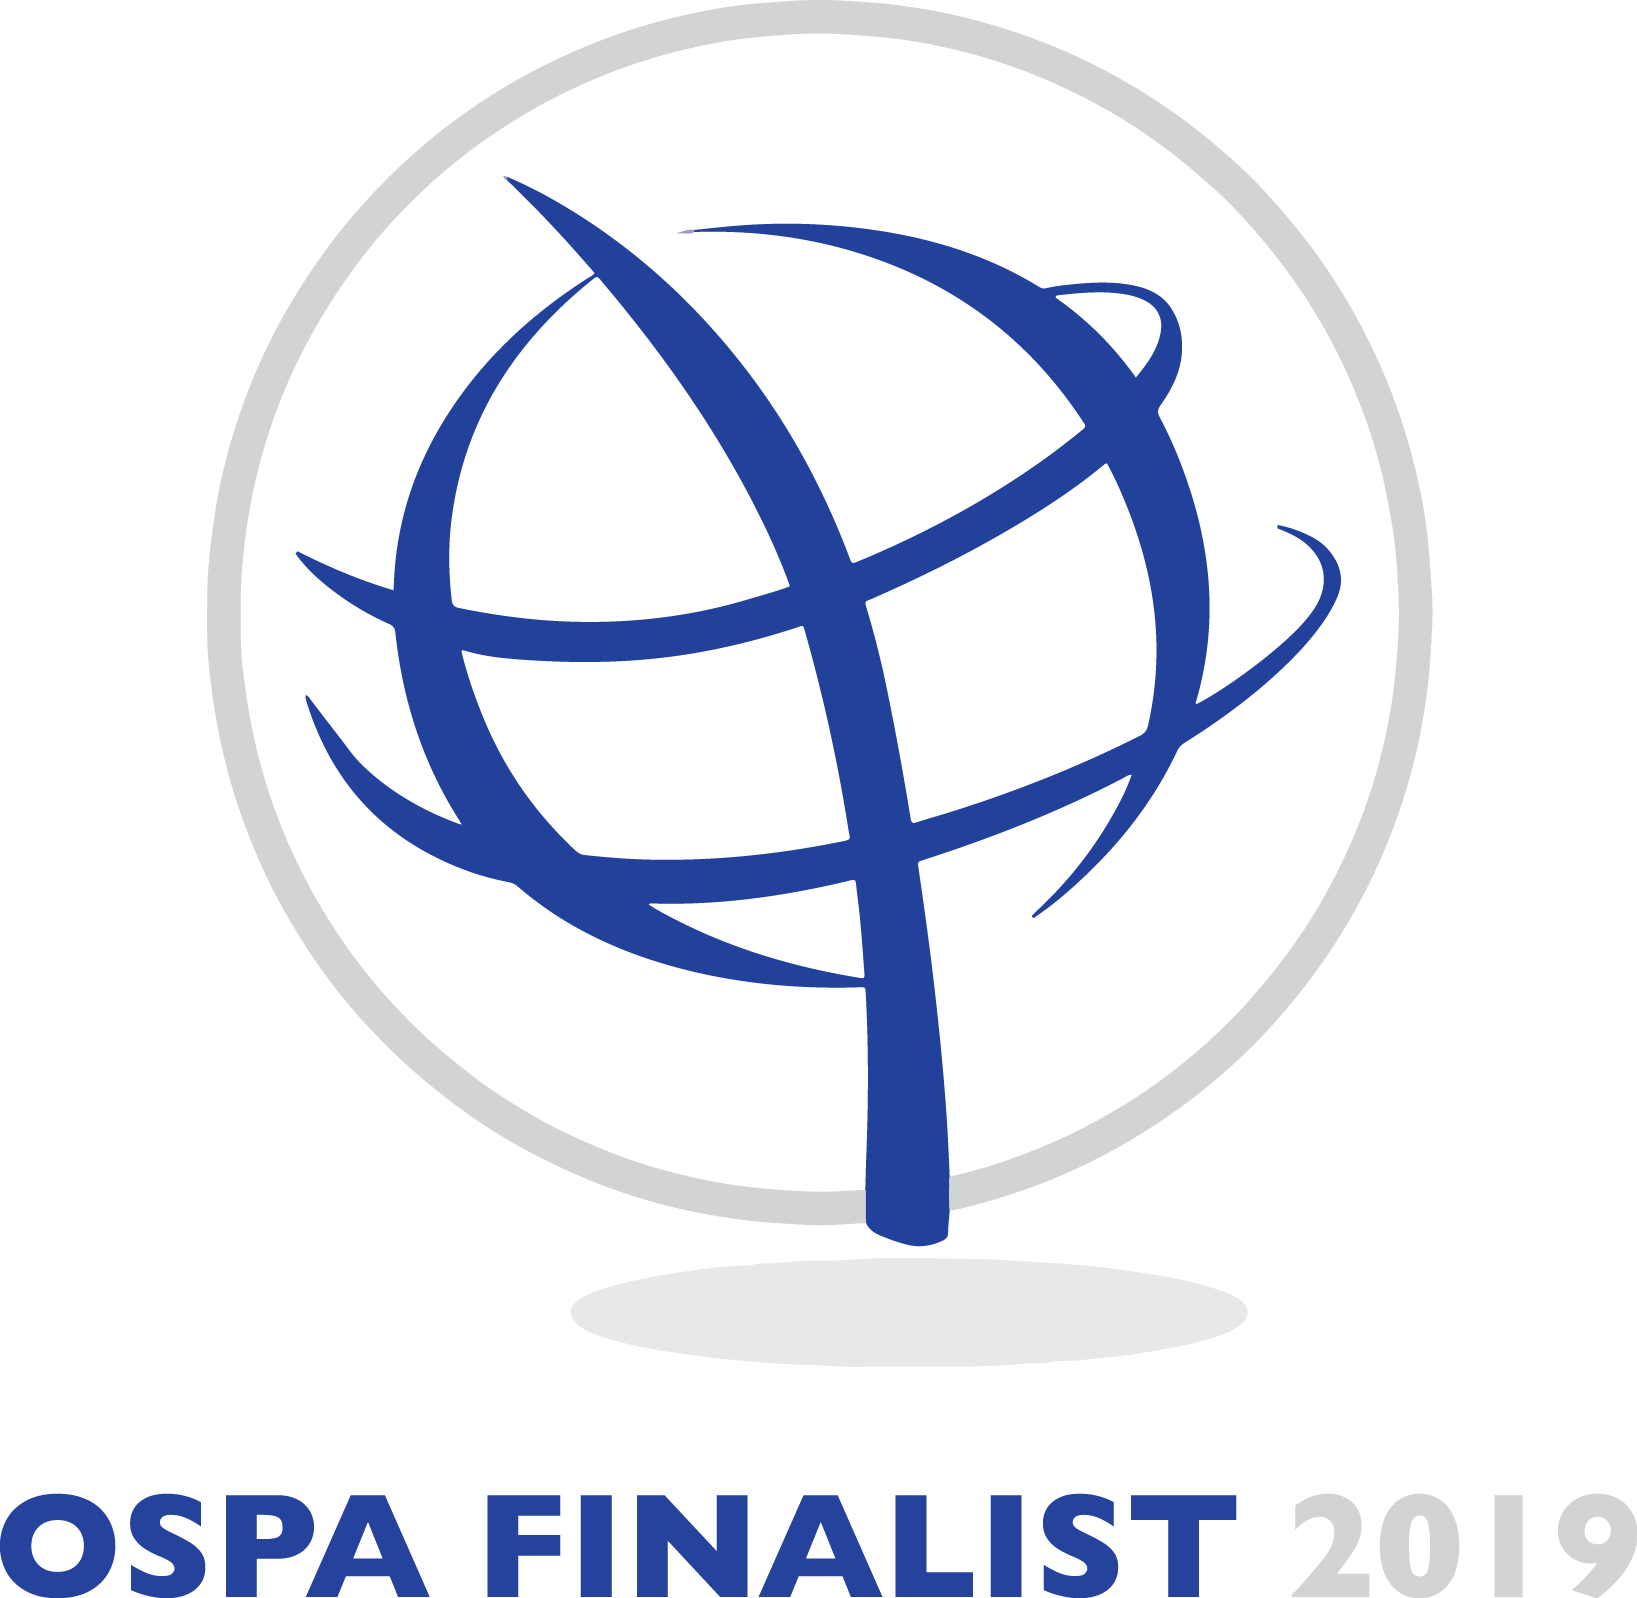 Ospa Finalist 2019